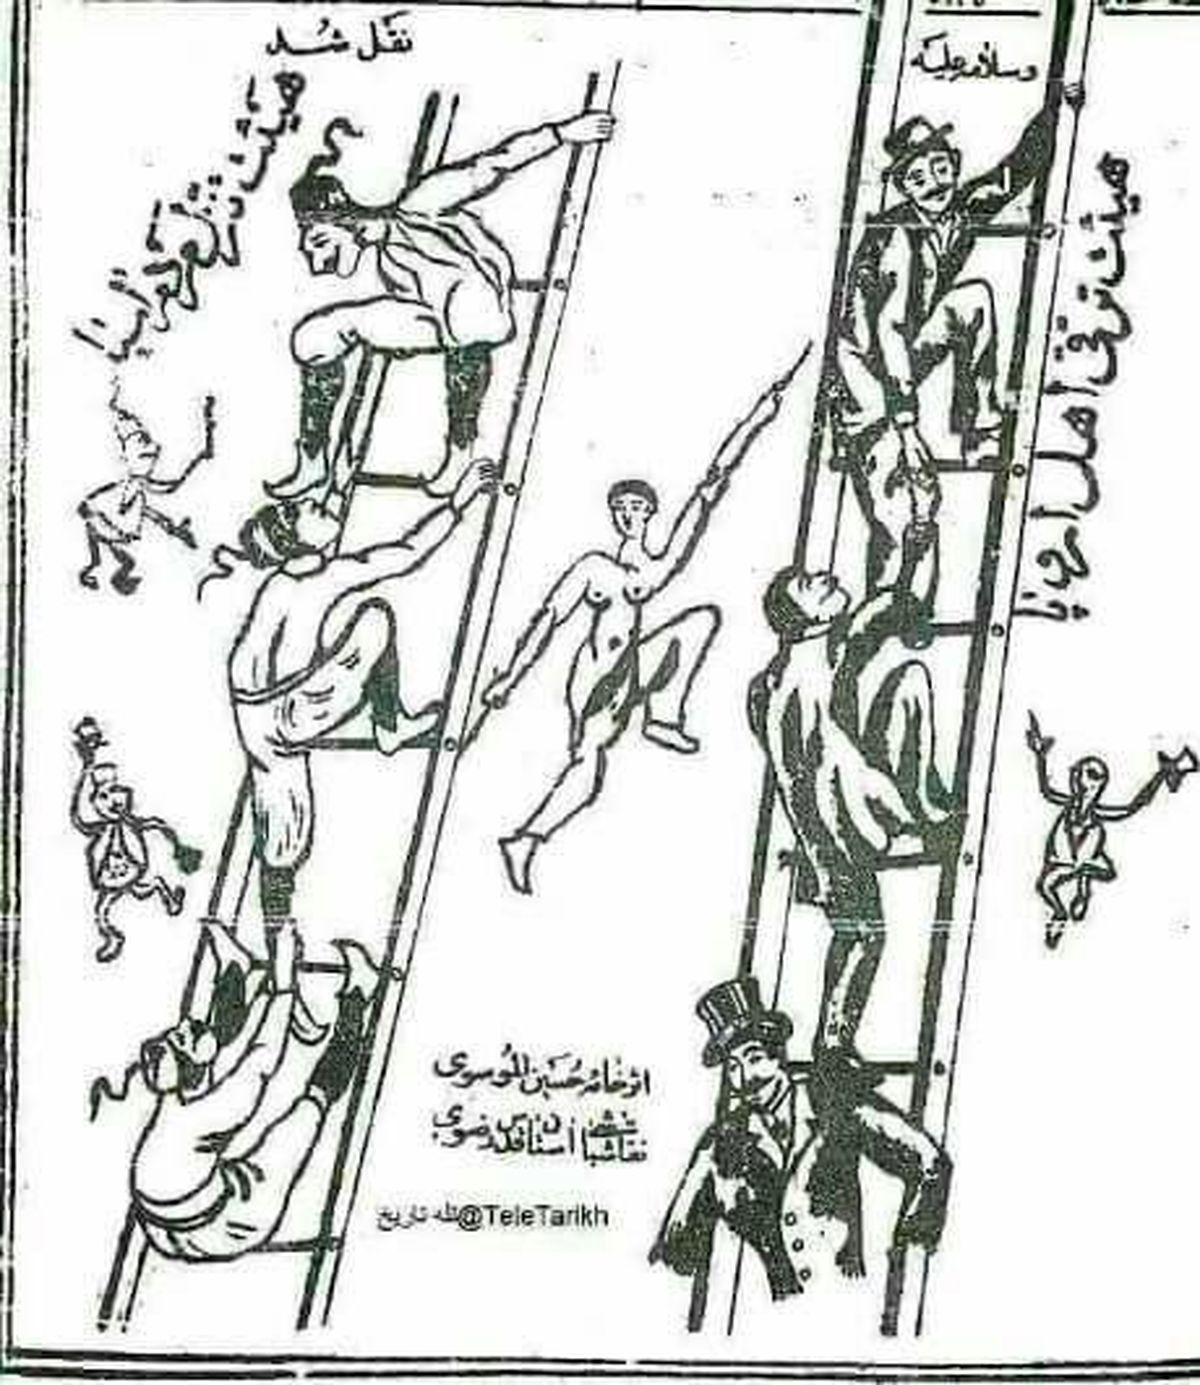 نخستین کاریکاتور مطبوعاتی ایران، ۱۲۰ سال پیش در مشهد